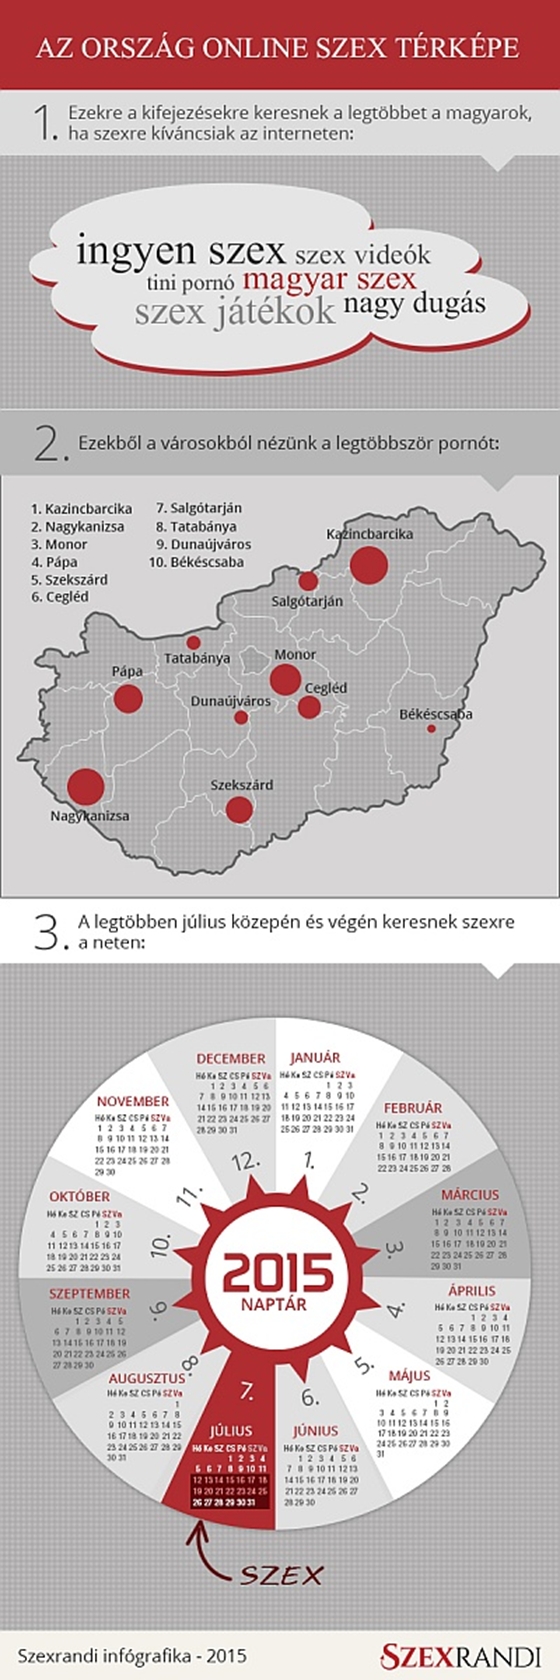 Térkép mutatja, melyik magyar városban nézik a legtöbb felnőttfilmet